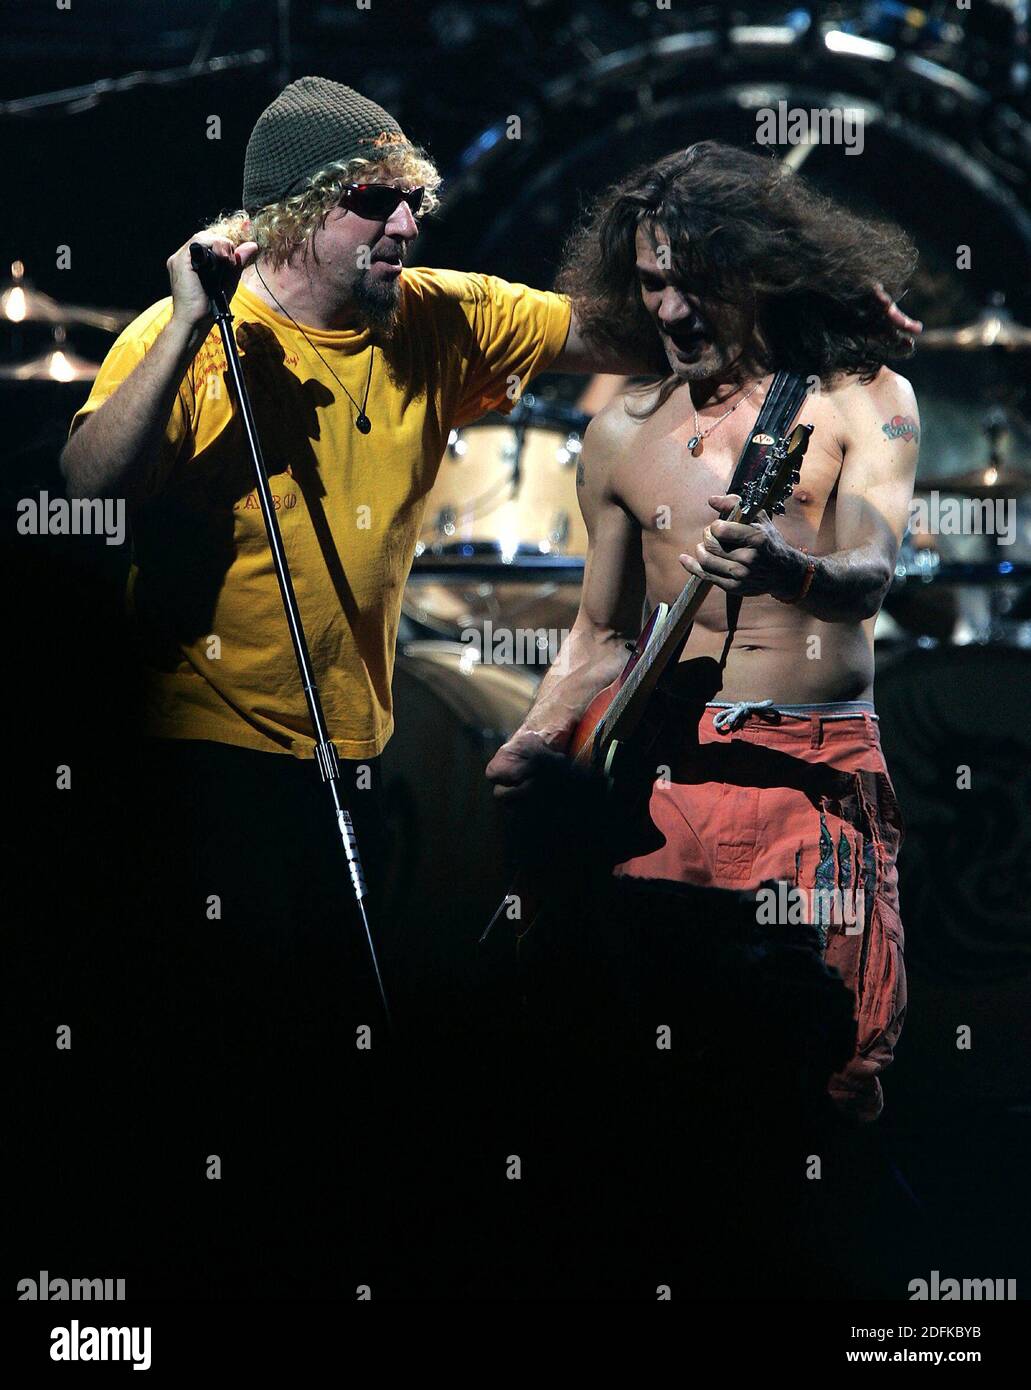 KEIN FILM, KEIN VIDEO, KEIN Fernsehen, KEINE DOKUMENTATION - Datei-Foto vom 6. Juli 2004 von Sammy Hagar und Eddie Van Halen treten in einem Konzert der Band Van Halen in Louisville, KY, USA auf. Eddie Van Halen, der Gitarrist und Songwriter, der der Rockband Van Halen ihren Namen und Sound gab, starb am Dienstag nach einem Kampf mit Krebs. Er war 65 Jahre alt. Foto von Mark Cornelison/Lexington Herald-Leader/TNS/ABACAPRESS.COM Stockfoto